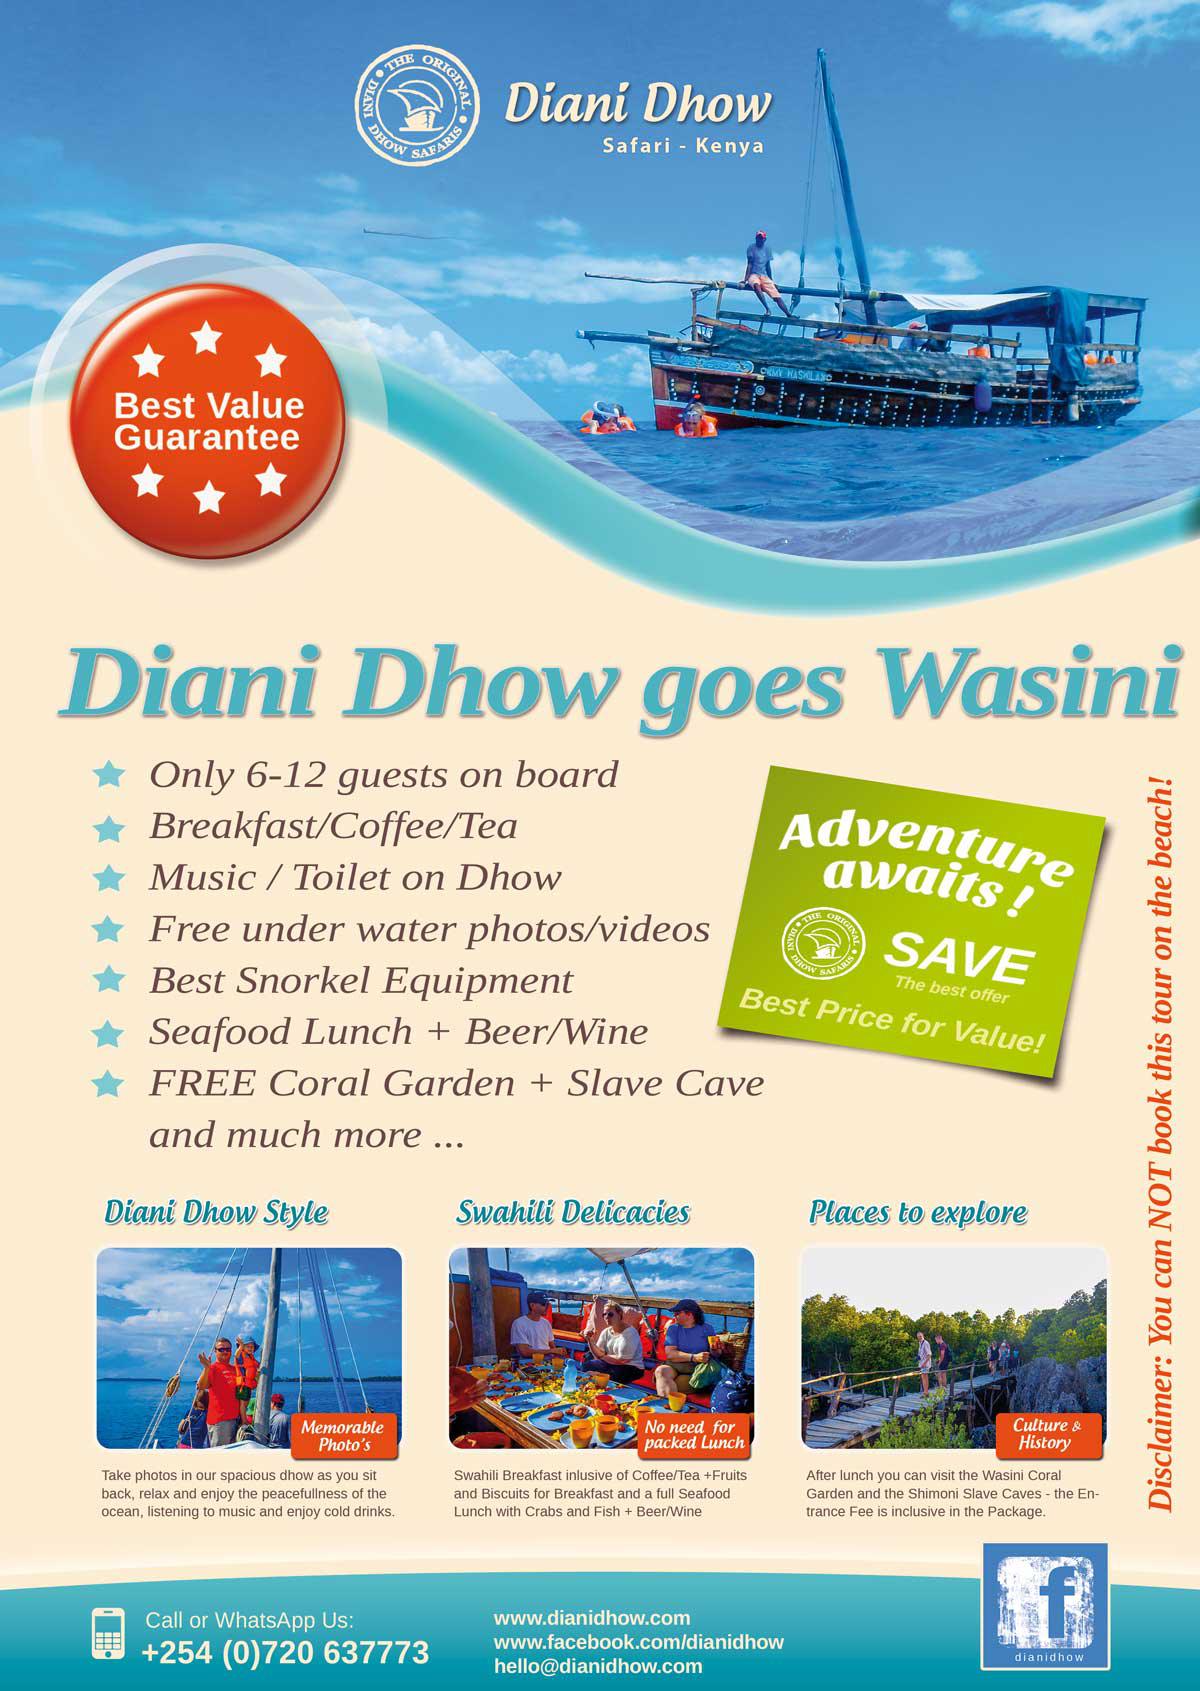 Diani Dhow goes Wasini